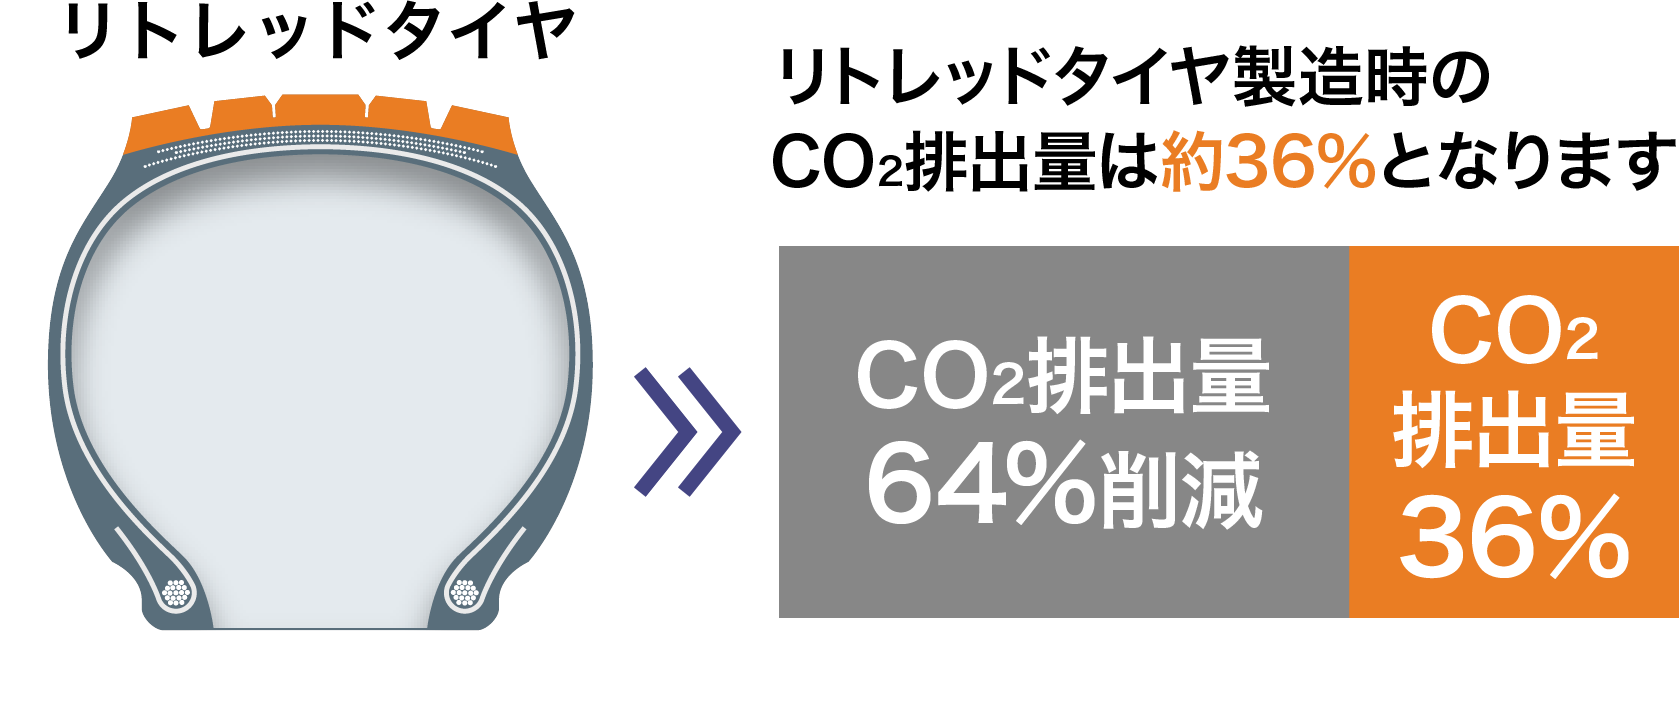 リトレッドタイヤ製造時のco2排出量は約36%の説明